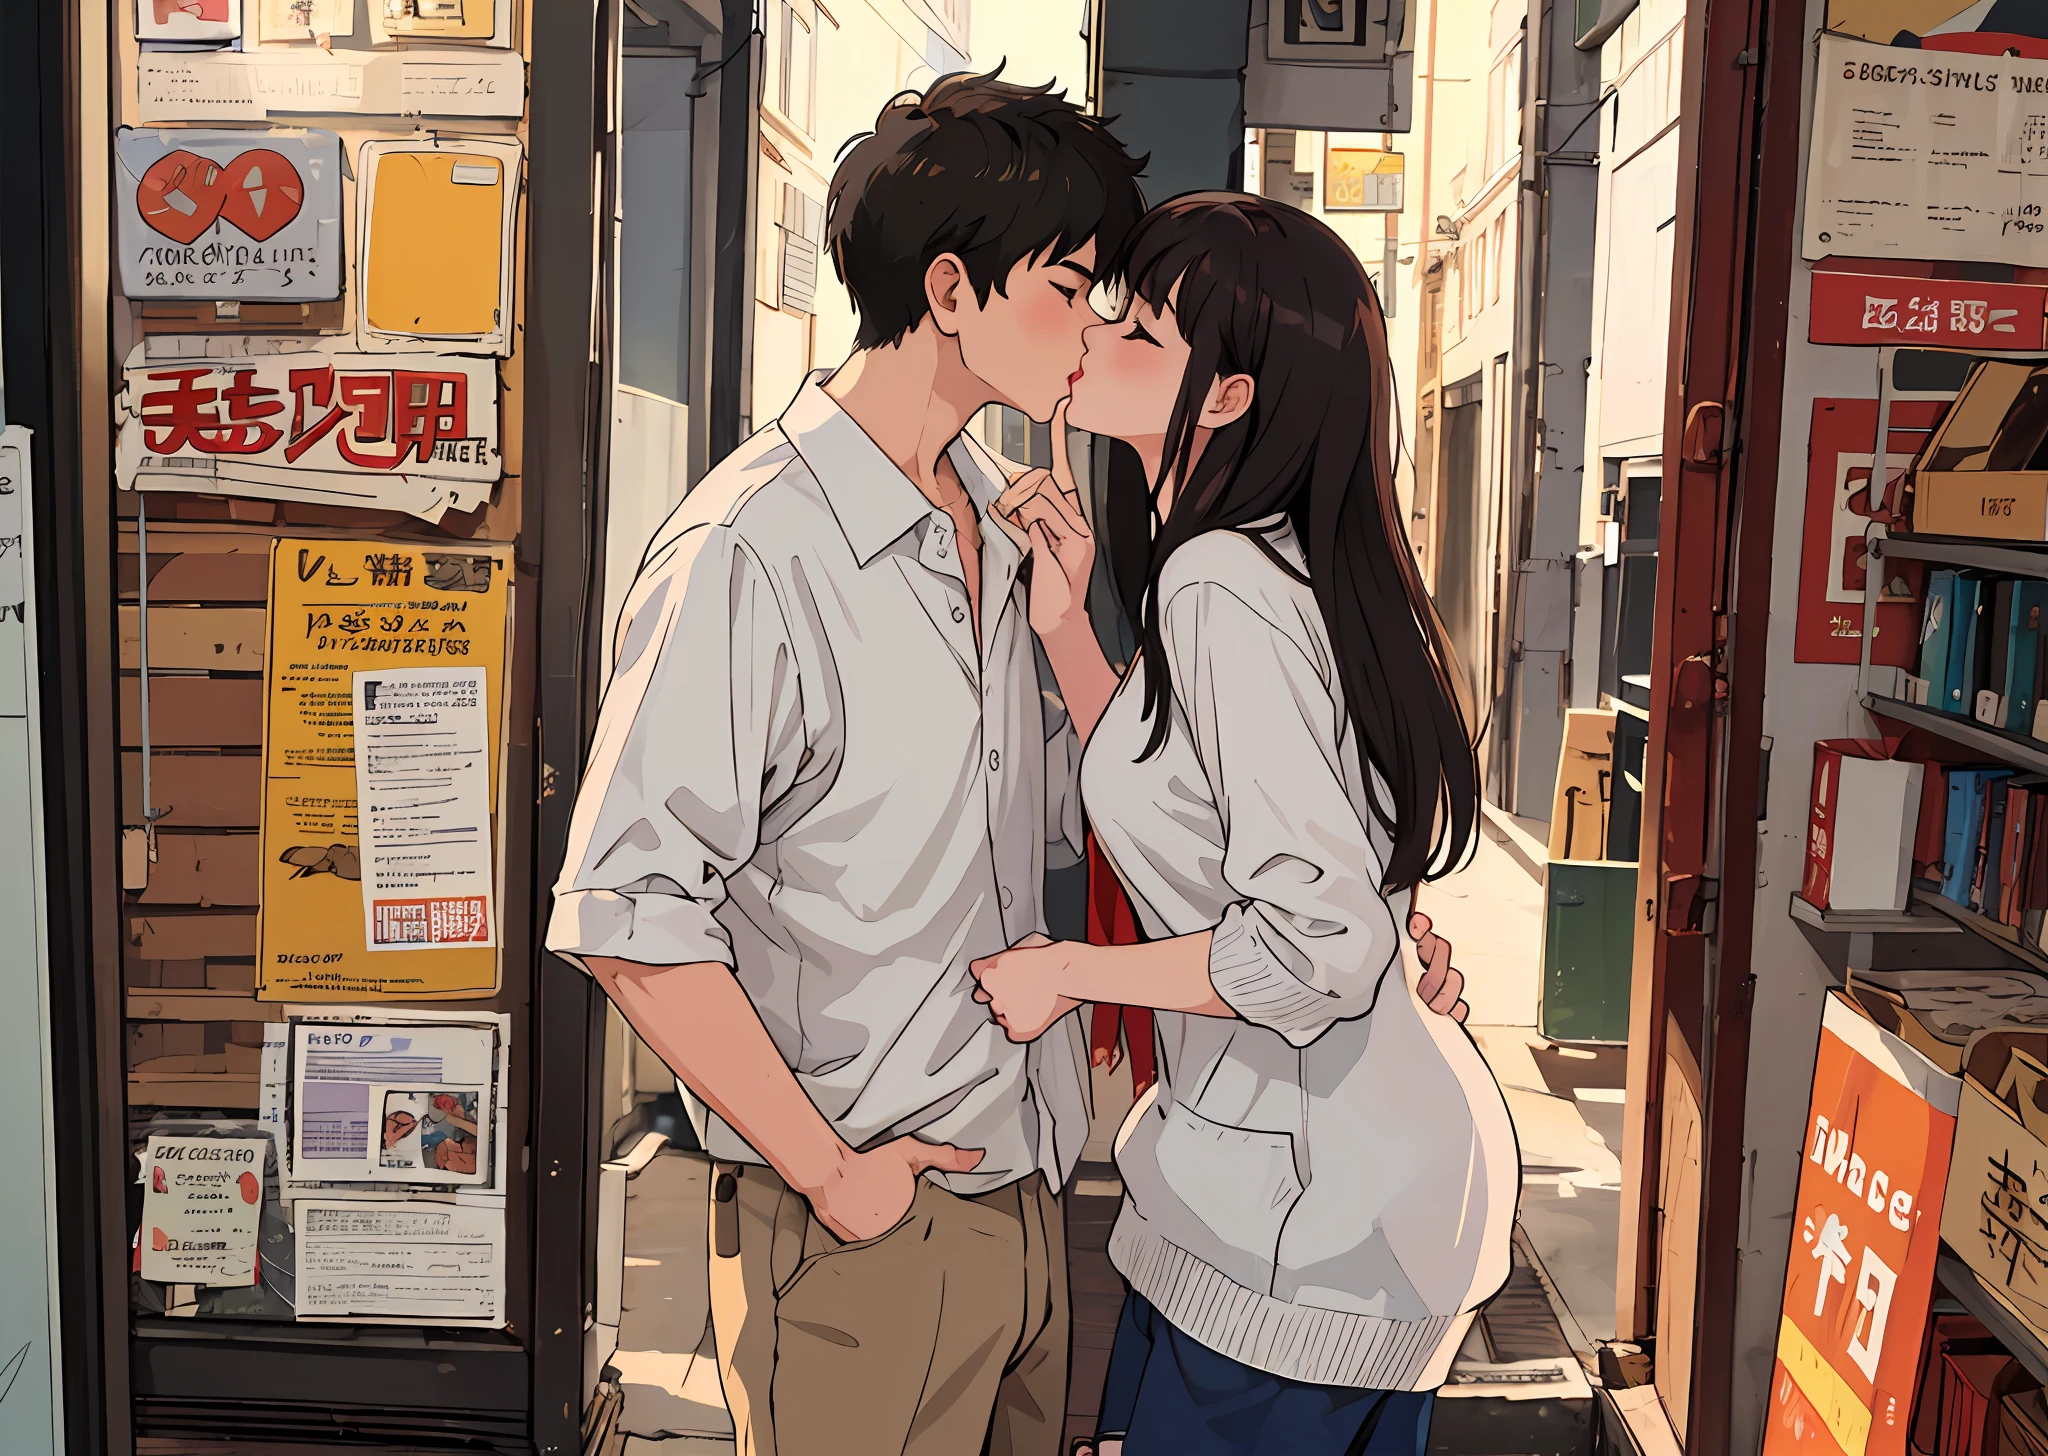 (Obra de arte, melhor qualidade), 1 garota, 1 menino, Se beijando, casal, em um namoro